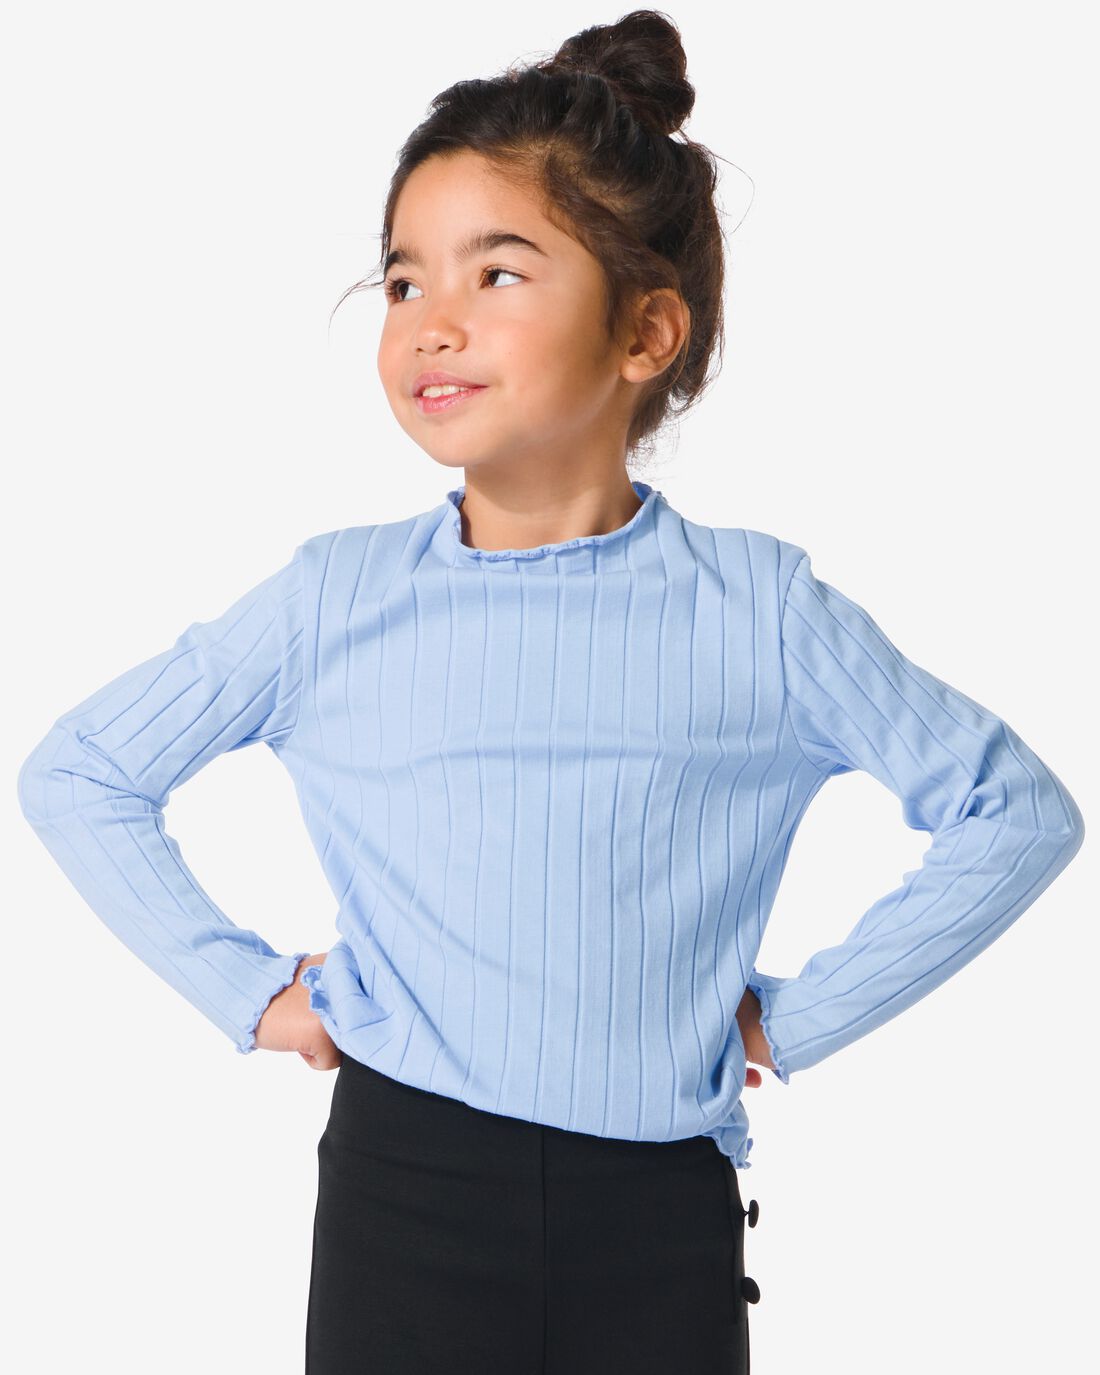 HEMA Kinder T-shirt Met Ribbels Lichtblauw (lichtblauw)